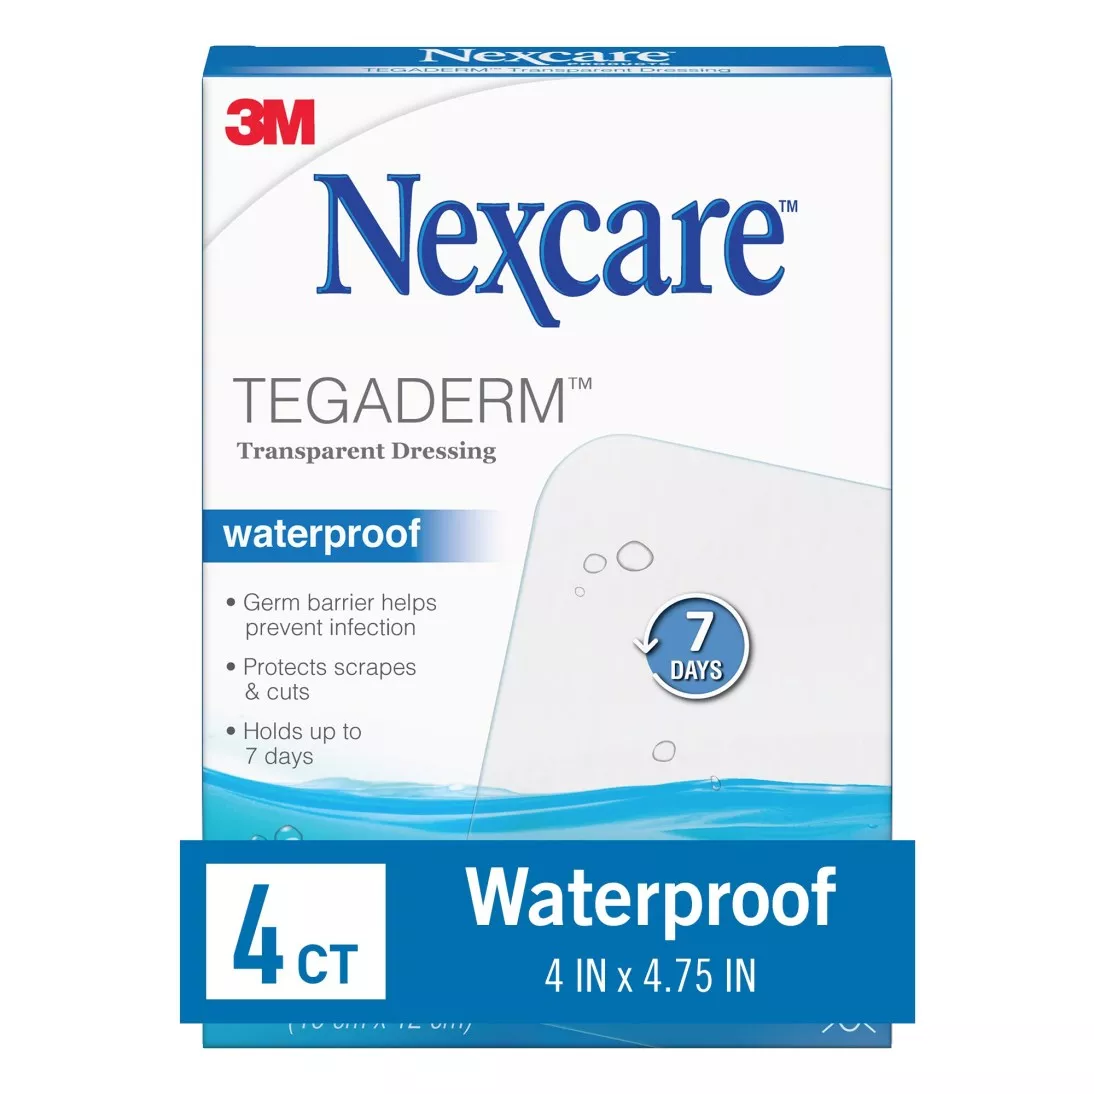 Nexcare™ Tegaderm™ Transparent Dressing H1626, 4 in x 4 3/4 in, (10 cm x
12 cm)